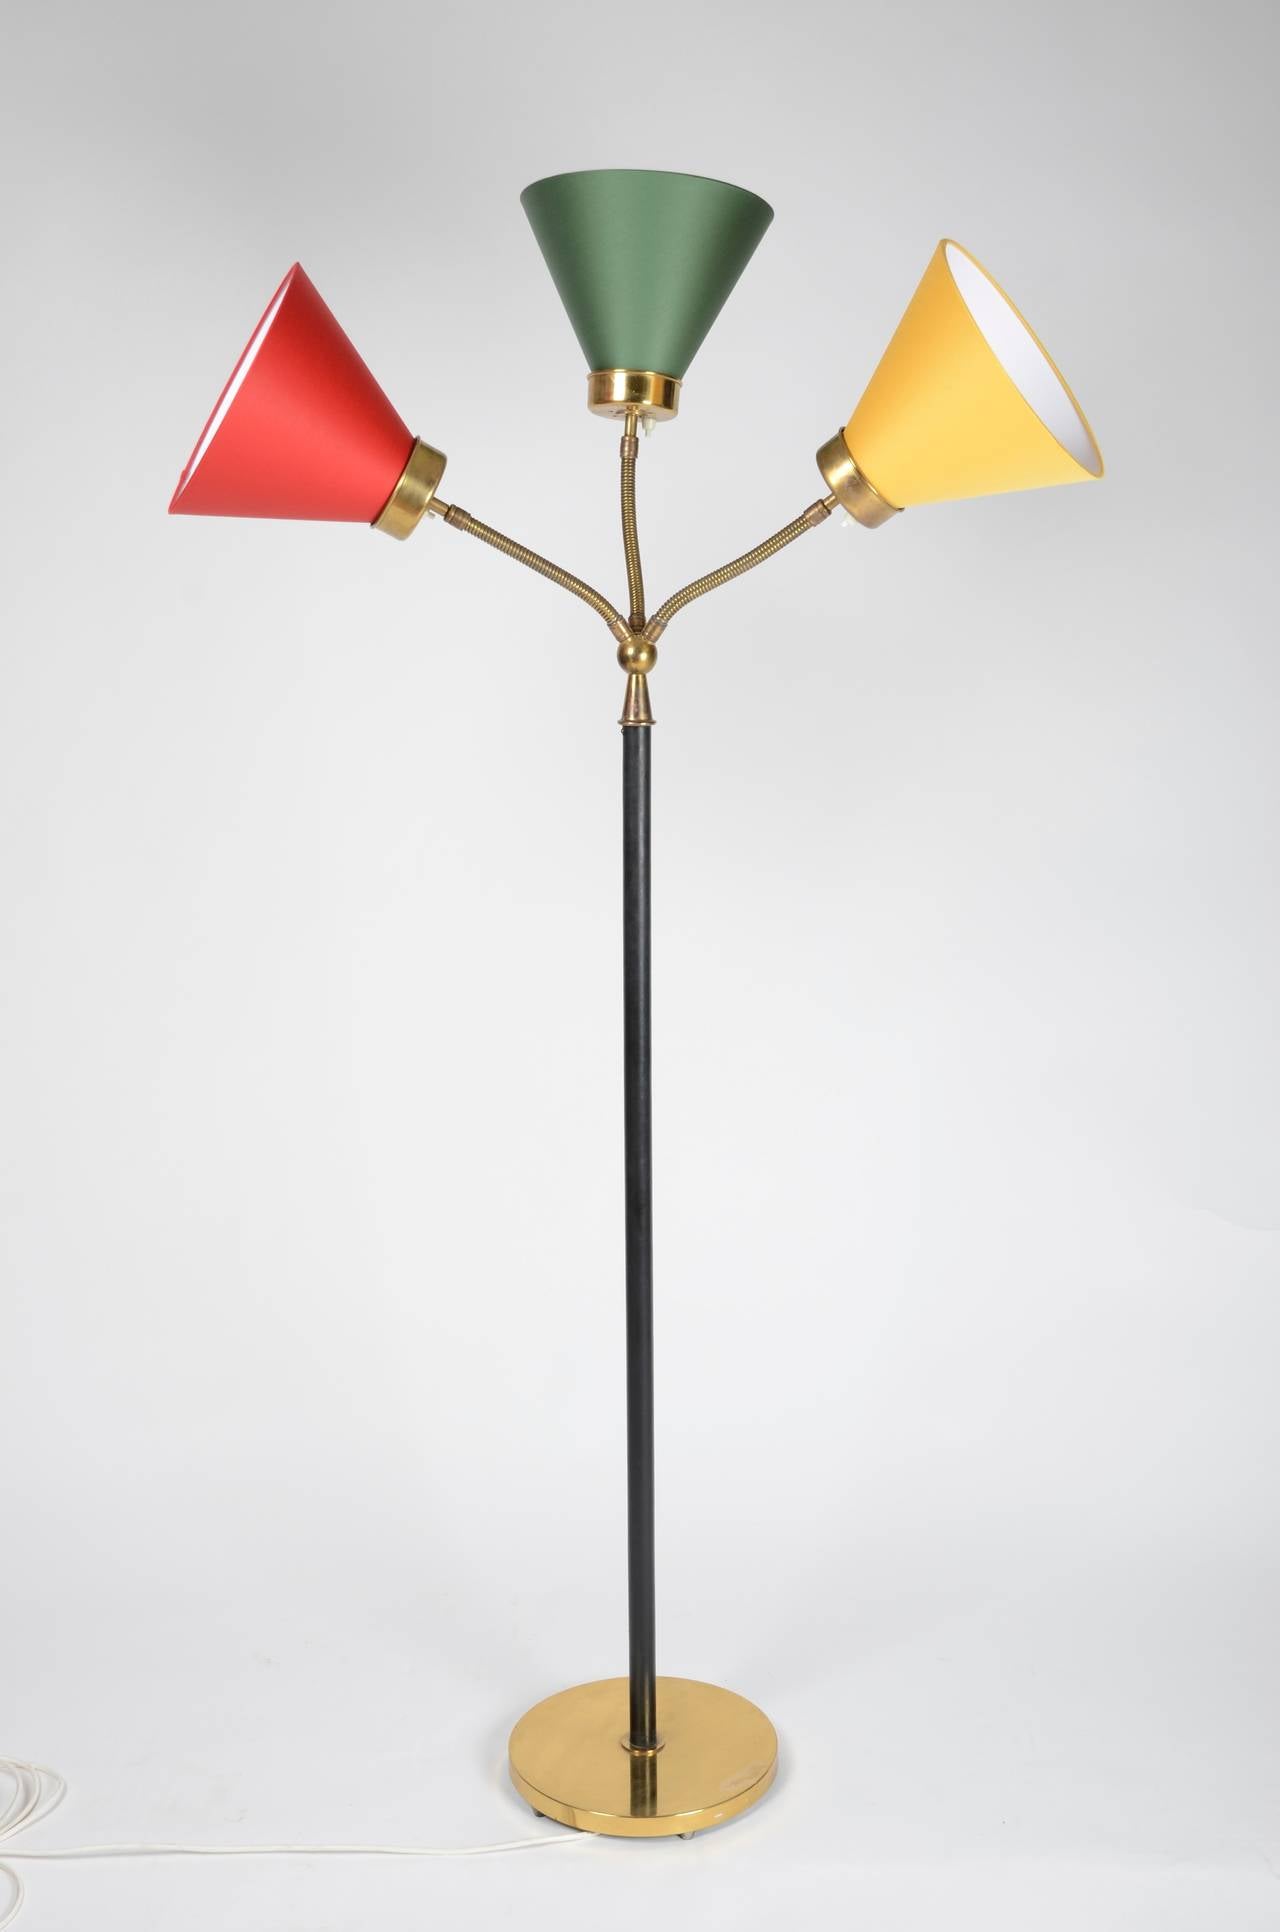 Scandinavian Modern Floor Lamp, Model 2431 by Josef Frank for Firma Svenskt Tenn